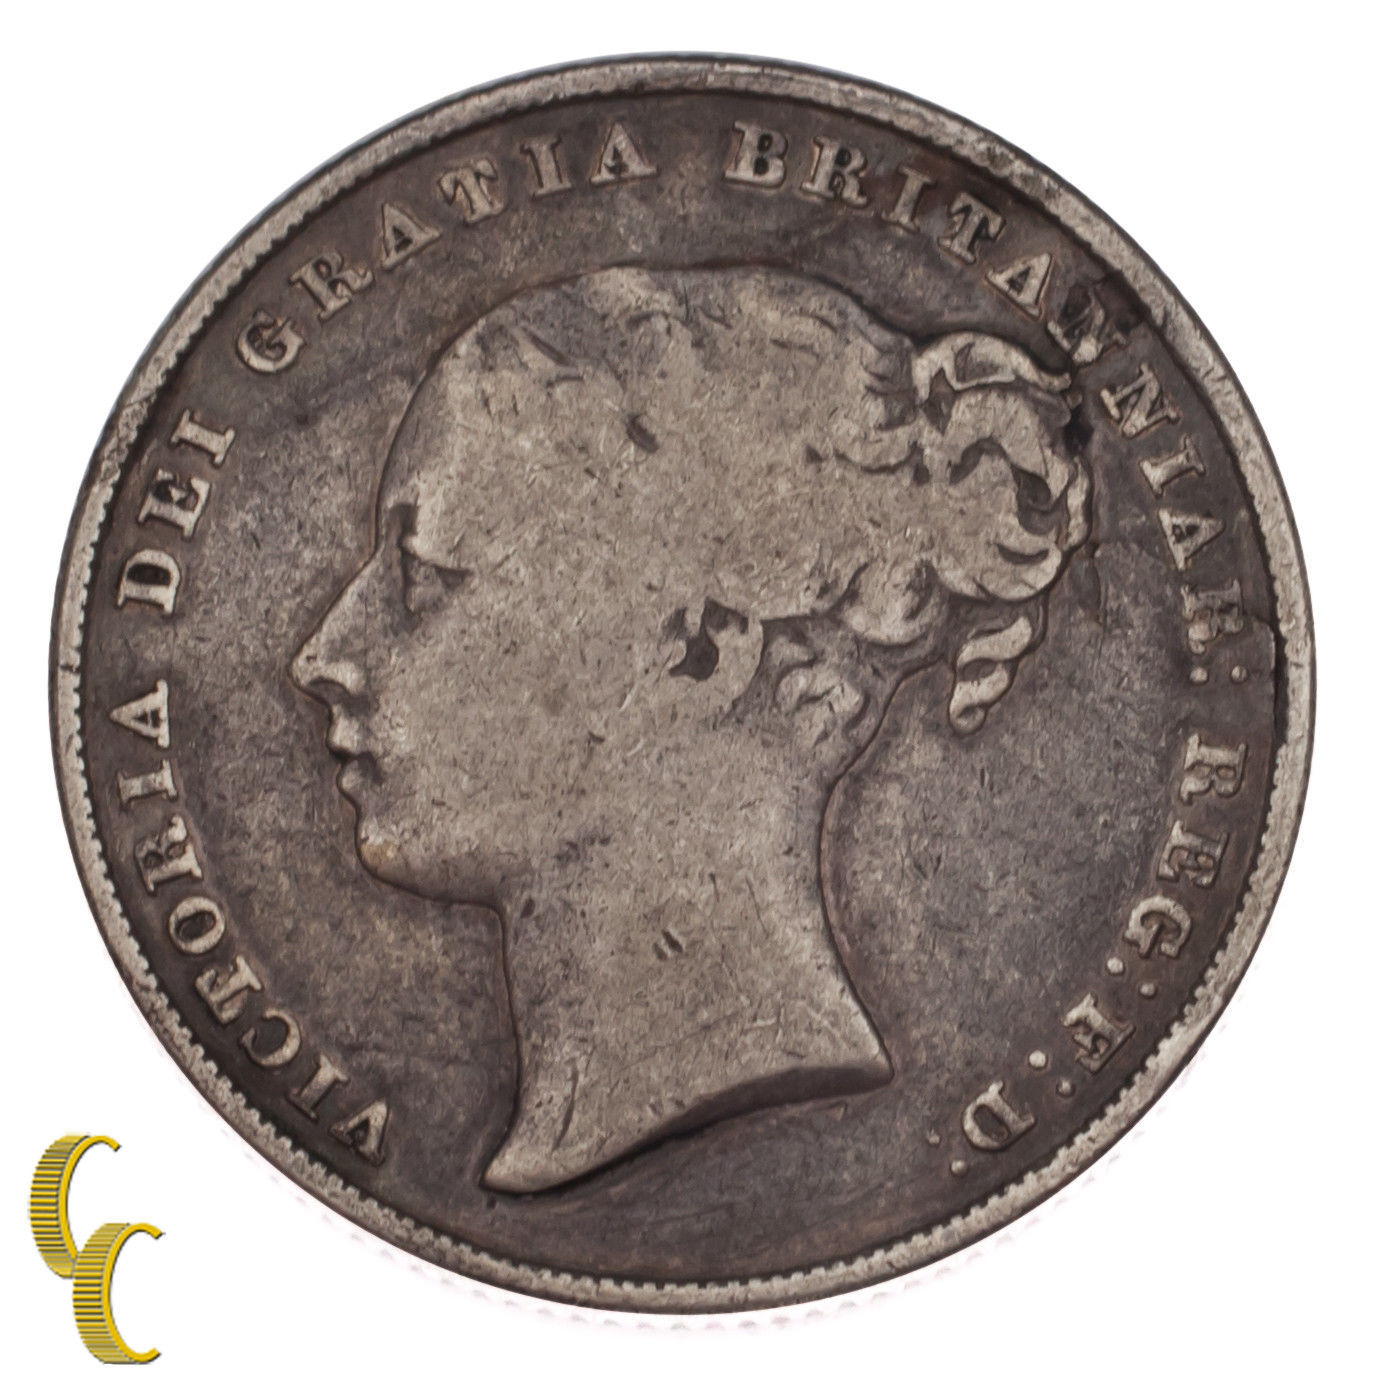 1839 Gran Bretagna Scellini Moneta D'Argento in Buone Condizioni, Km #734.1 - $88.64